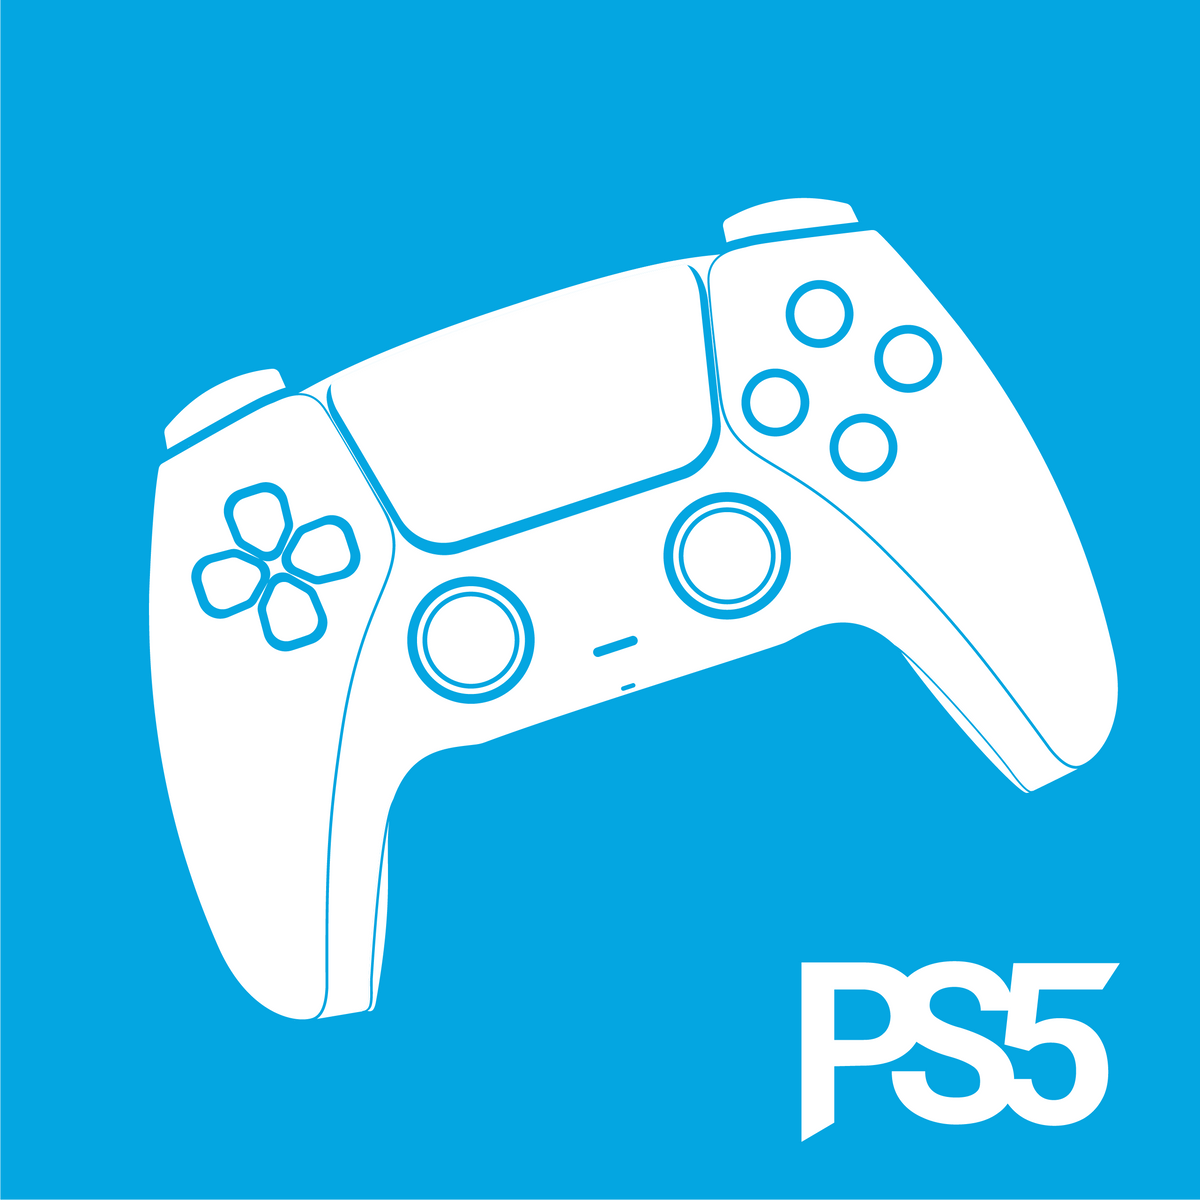 PS5 Pro : Sony dévoile sa future manette, palettes et gâchette